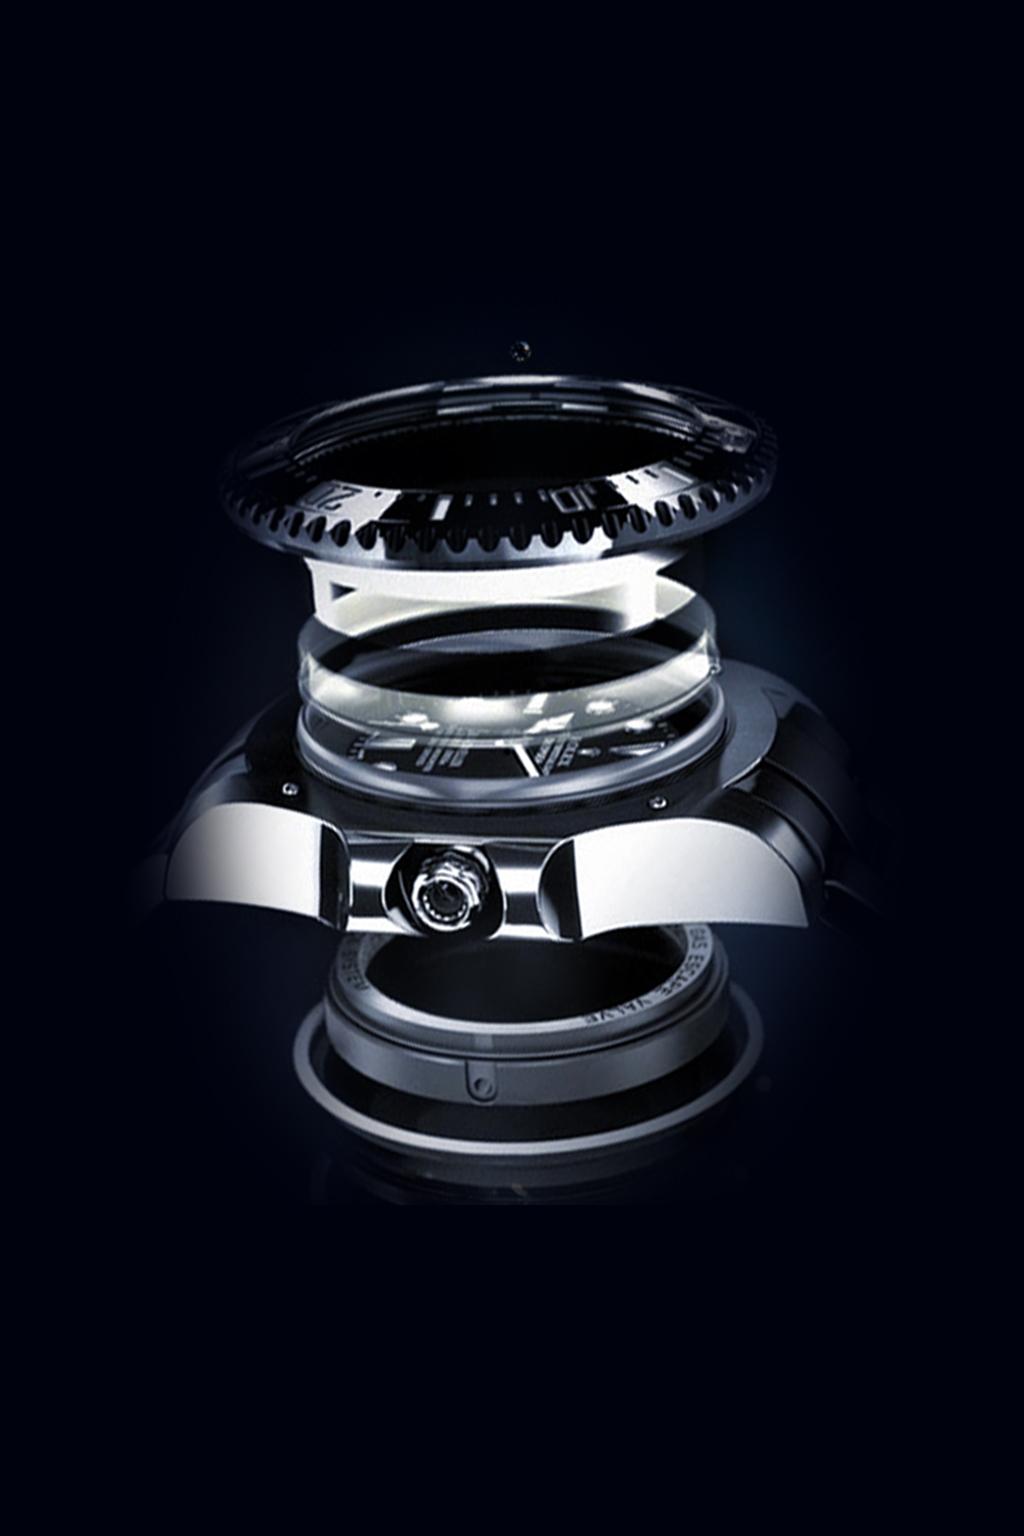 Rolex Deepsea İşlevi RINGLOCK SİSTEMİ Özel bir teknik yenilik olan Ringlock Sistemi sayesinde Rolex Deepsea modelinin kasa kristali, yaklaşık üç tona eş değer su basıncına dayanıkılılık gösterir.